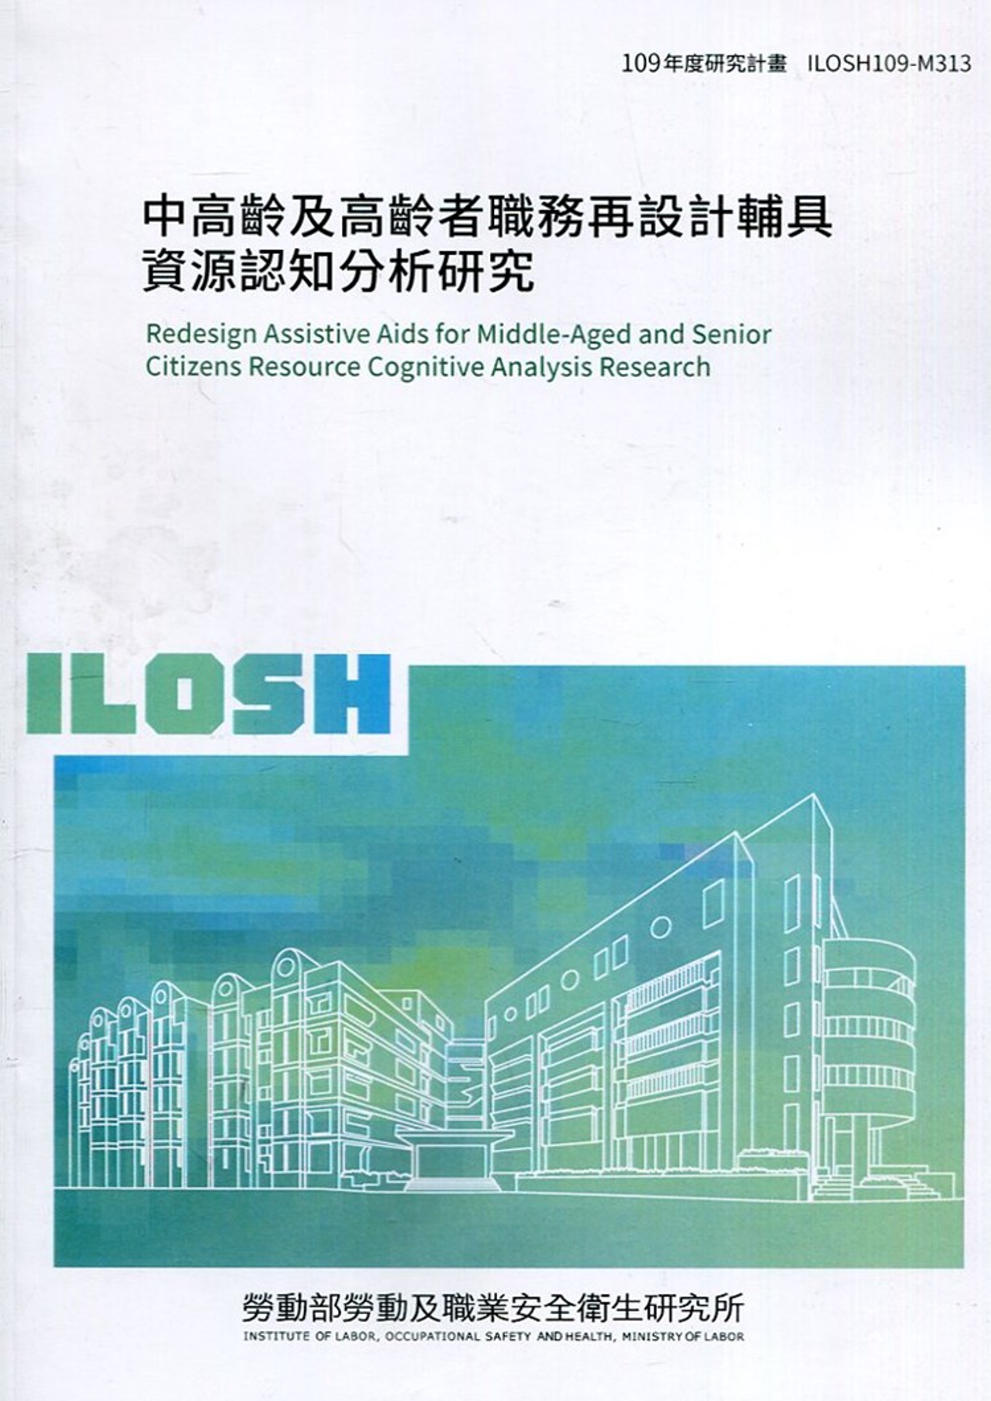 中高齡及高齡者職務再設計輔具資源認知分析研究 ILOSH109-M313